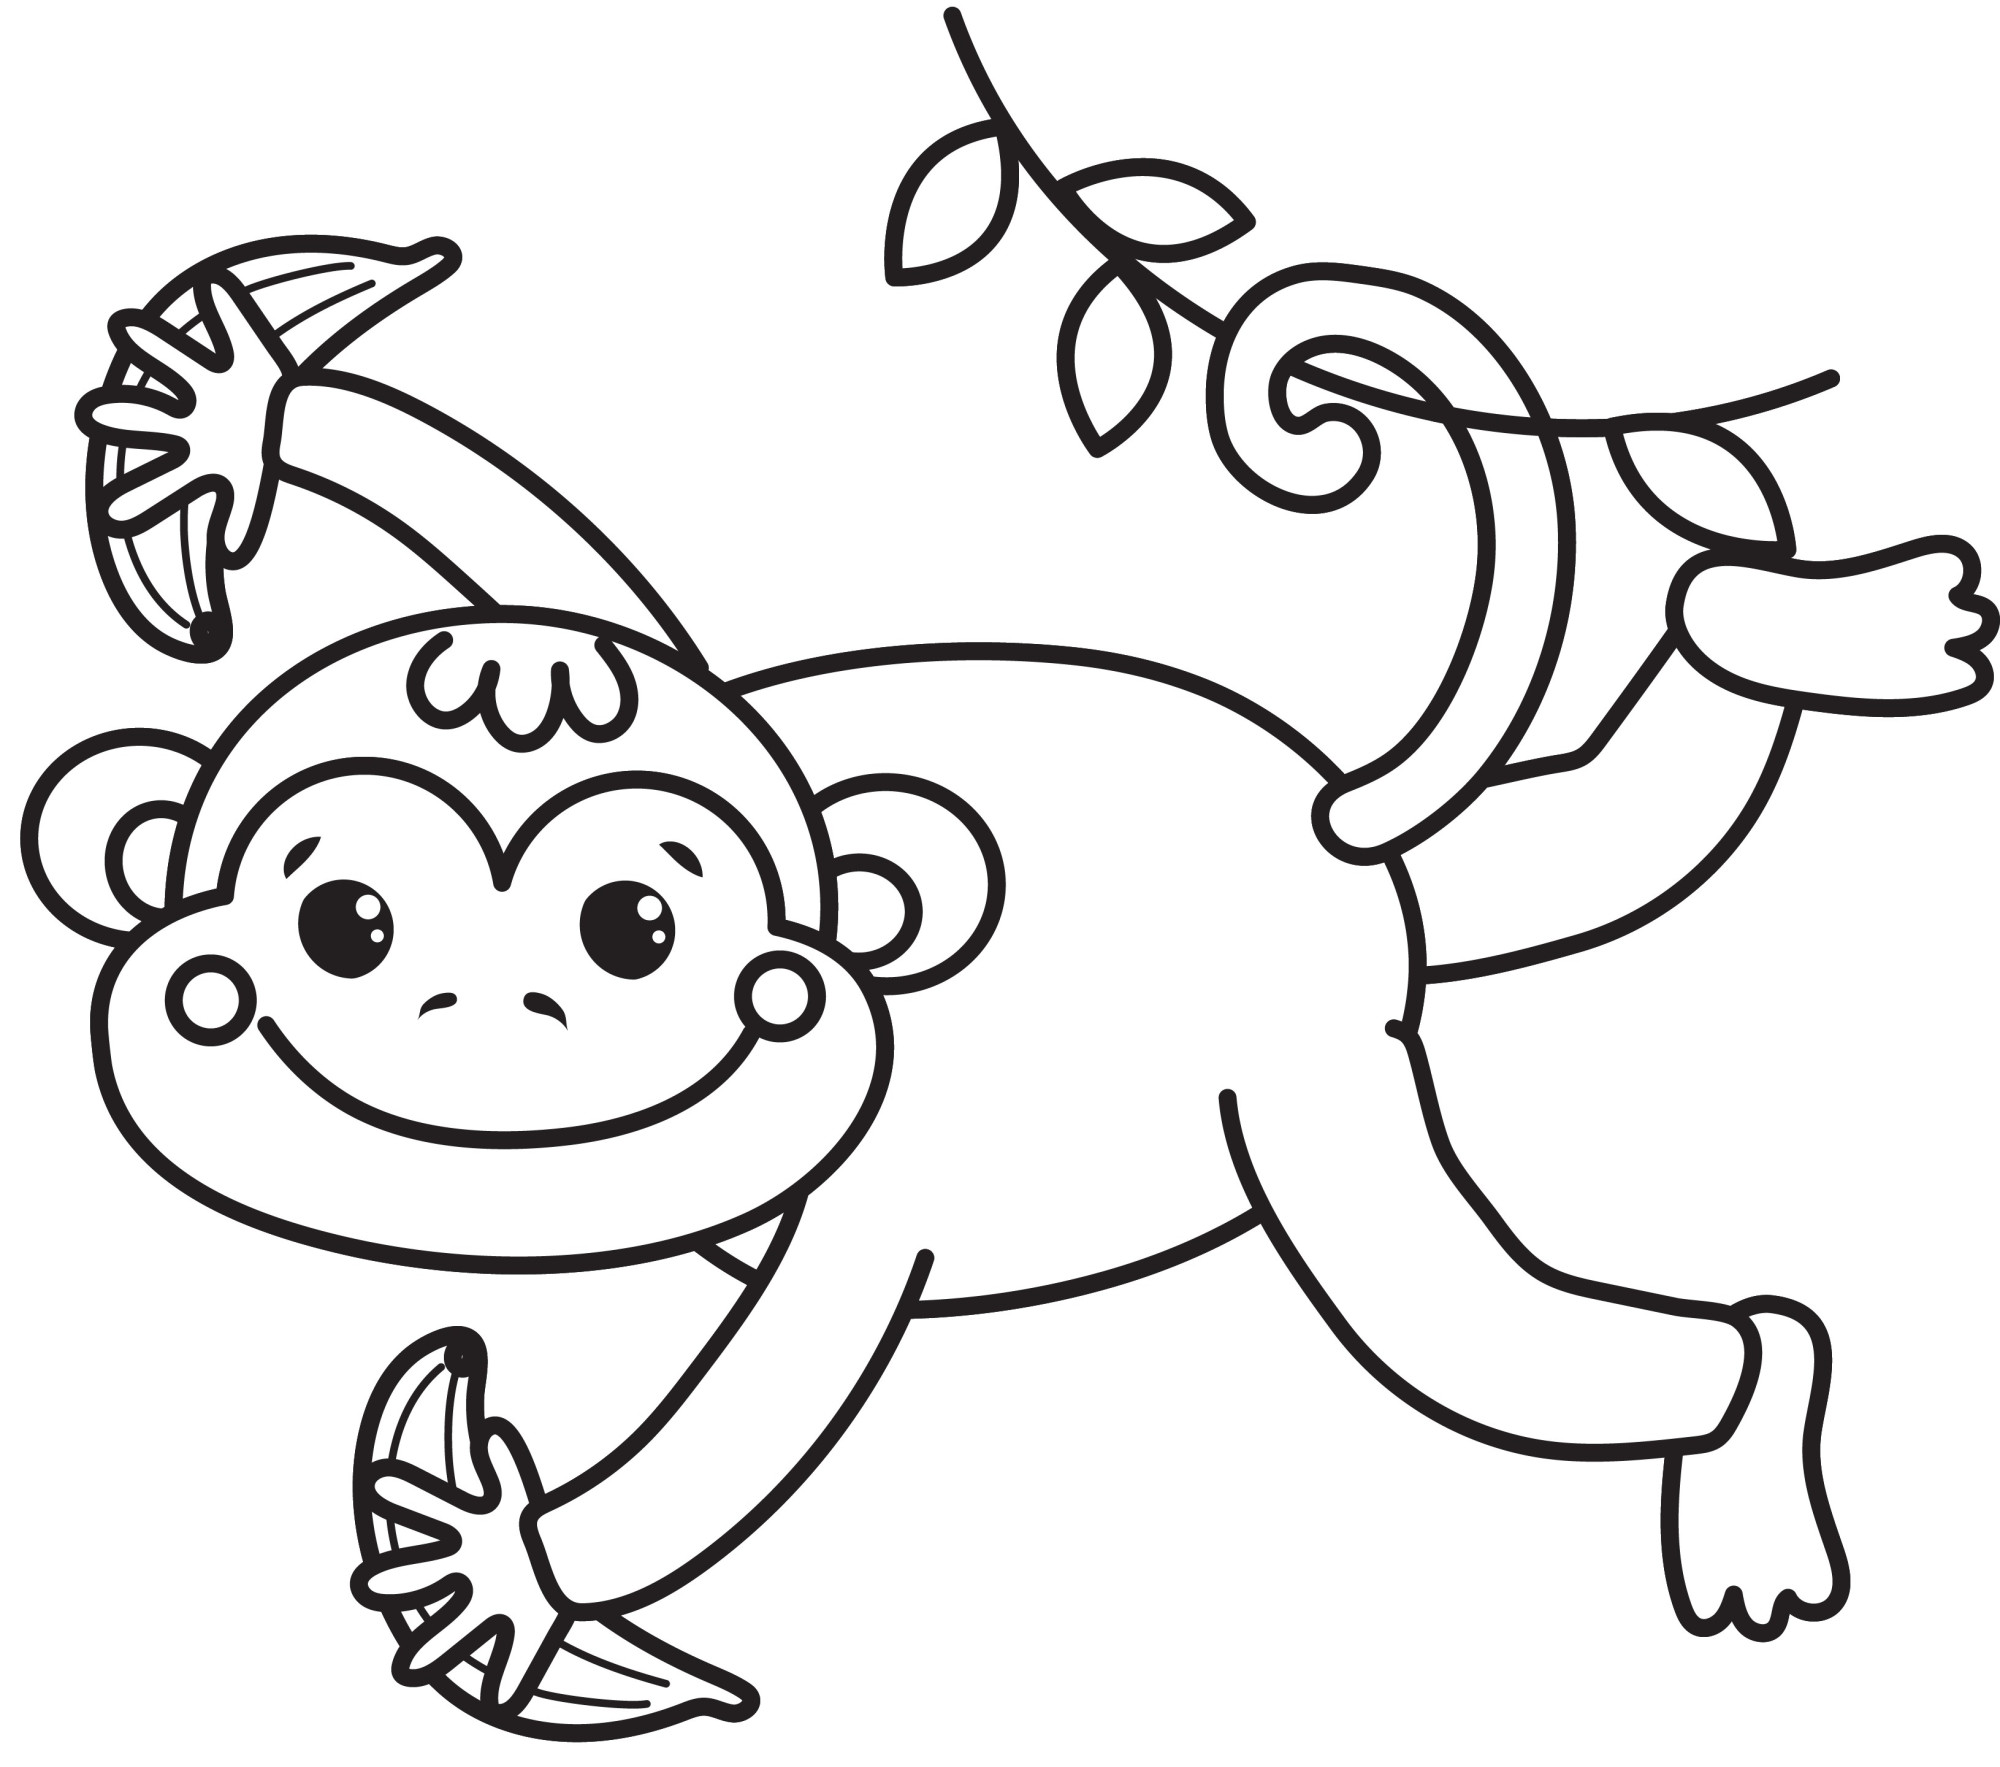 Раскраска для детей: обезьяна катается на лиане зацепившись хвостом